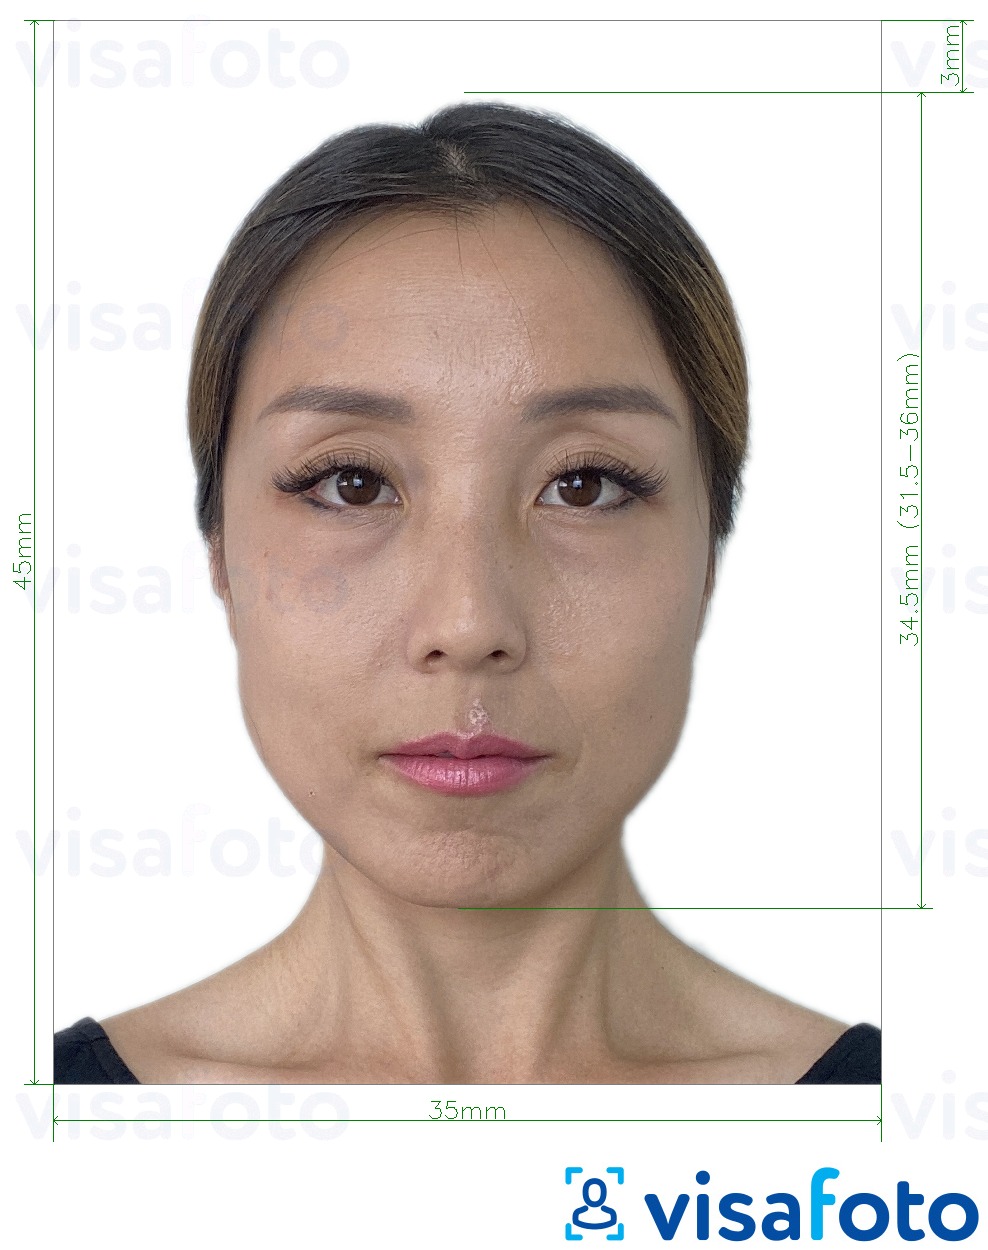 Példa a Tajvan Visa 35x45 mm (3,5x4,5 cm) fényképre pontos méret meghatározással